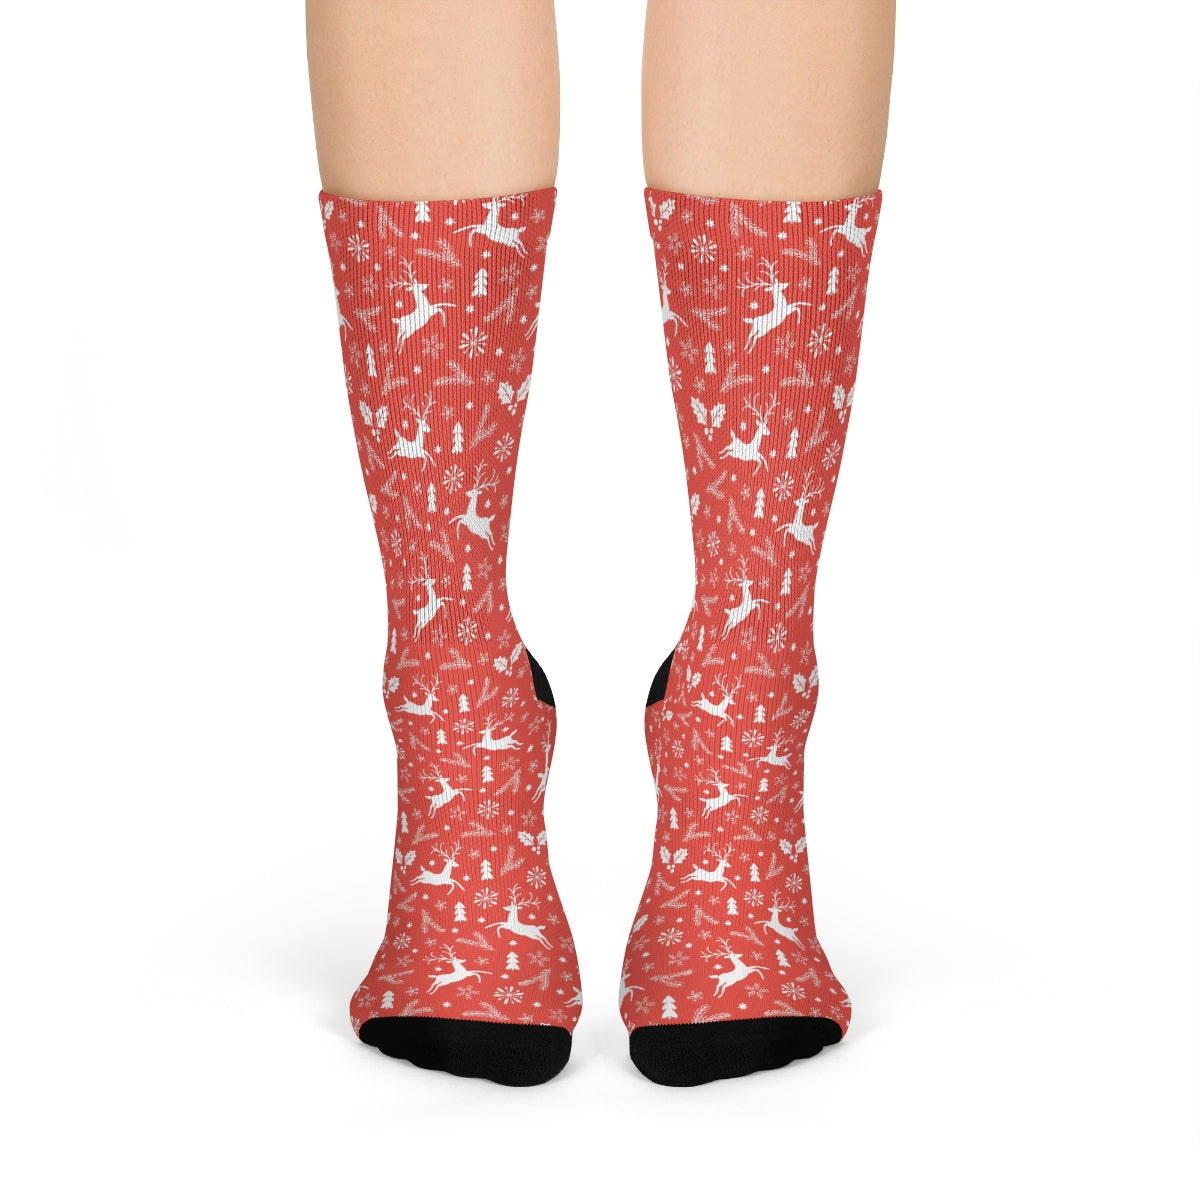 Socks - Mary Christmas Sublimation Crew Socks Reindeers